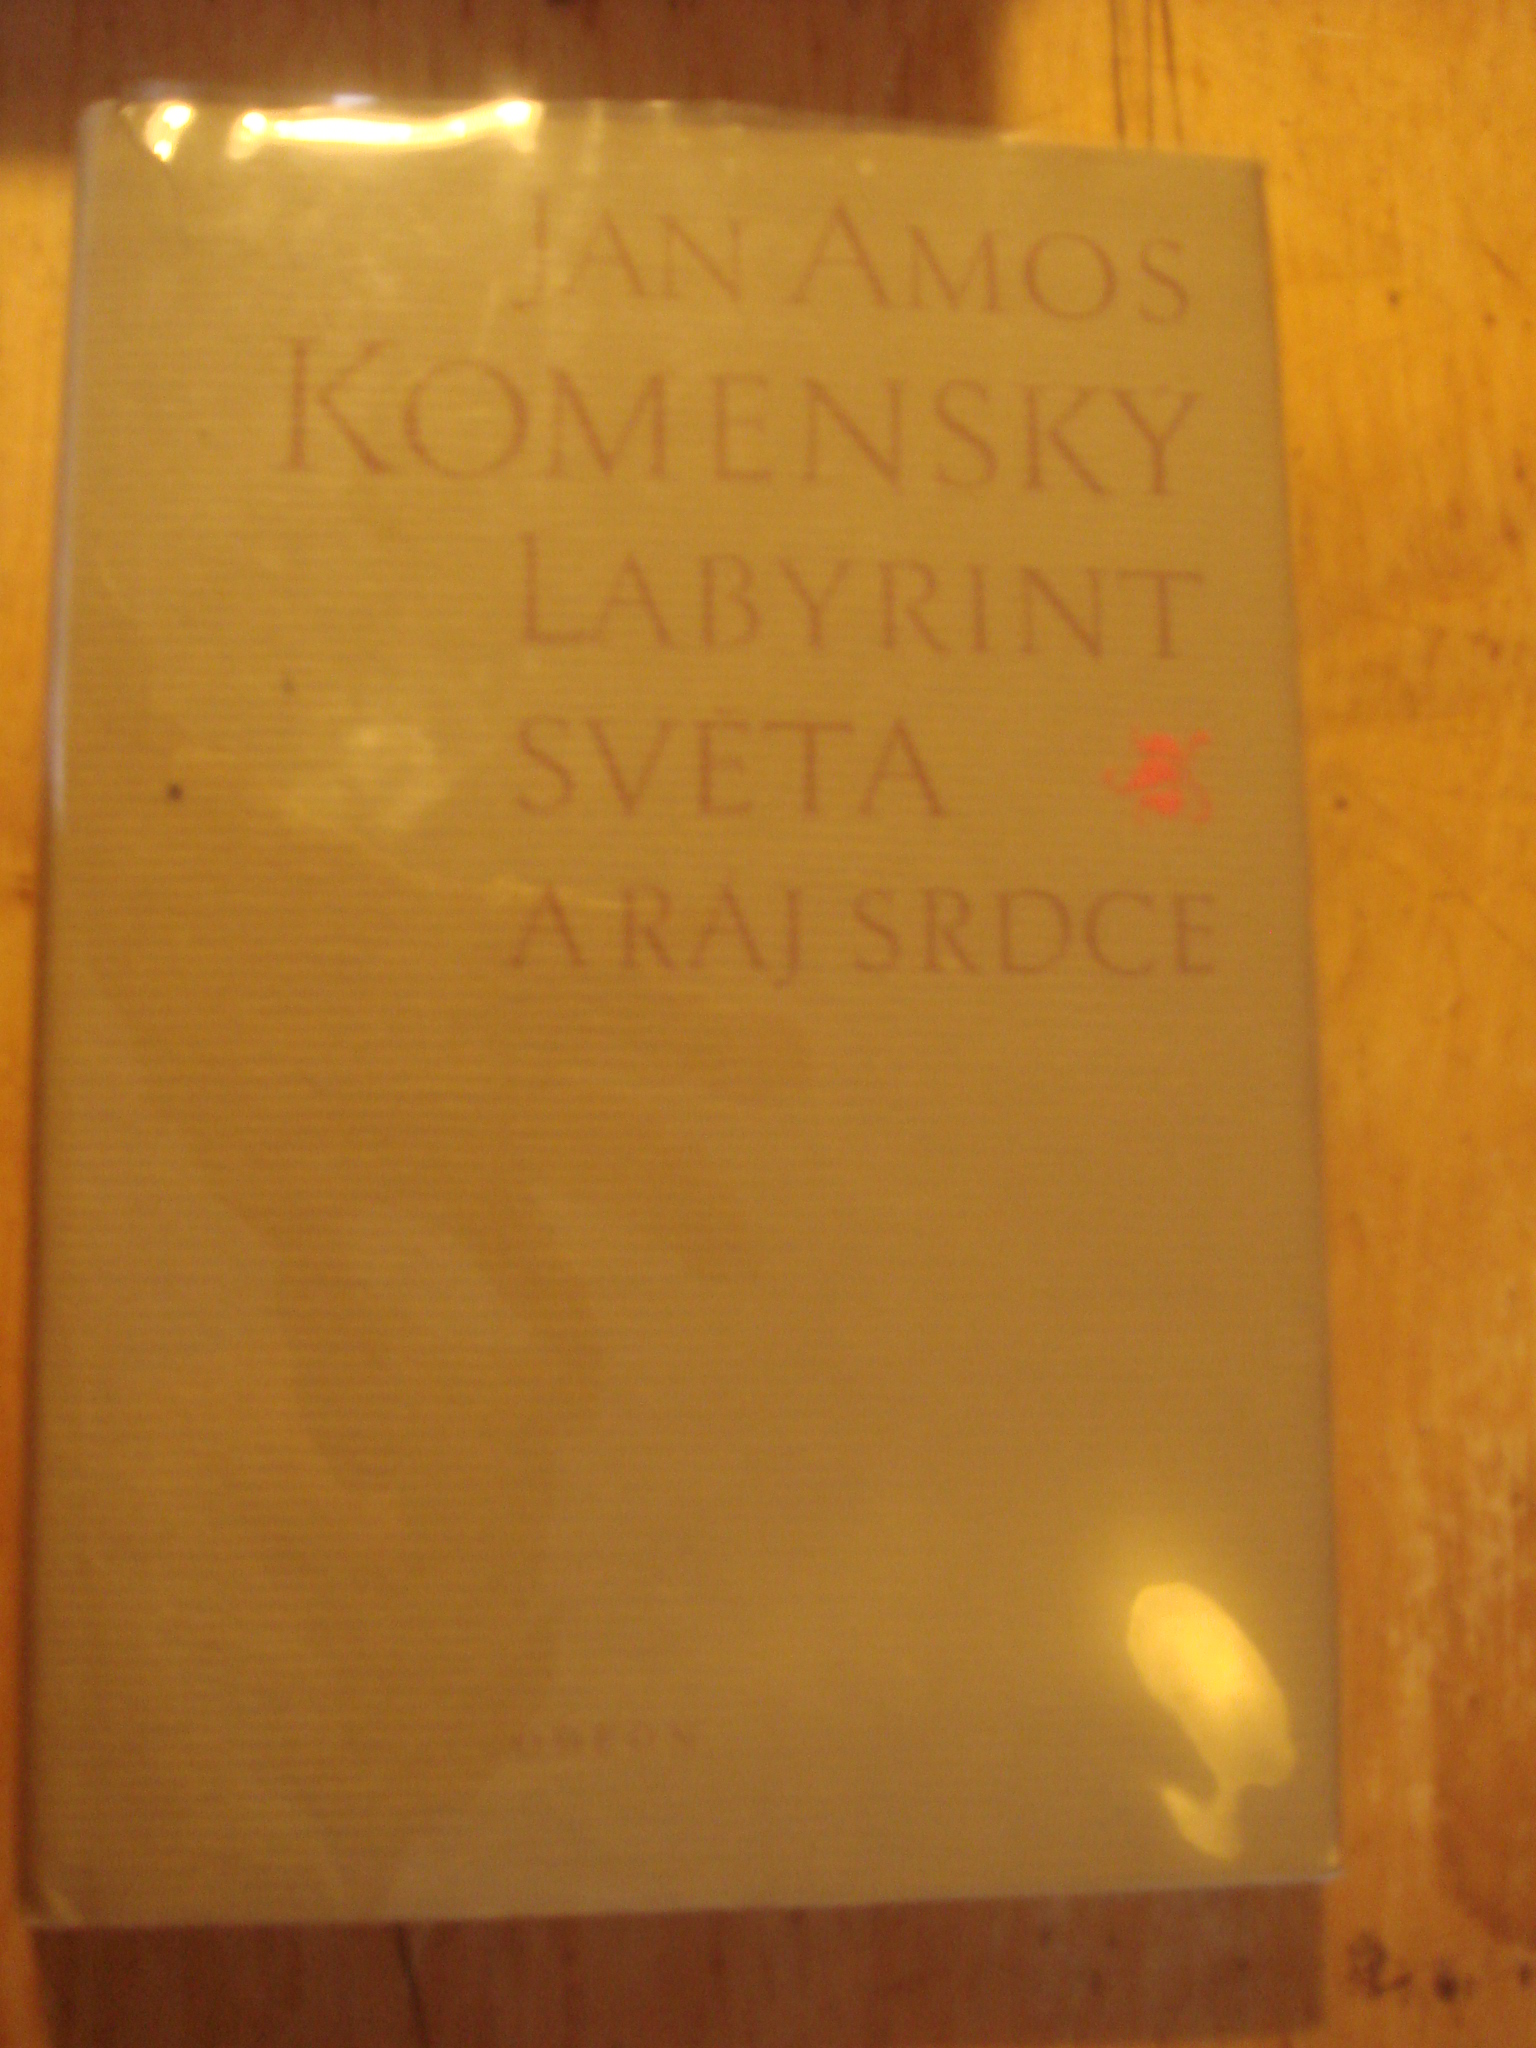 zobrazit detail knihy Komensk, Jan Amos :  Labyrint svta a rj srdce